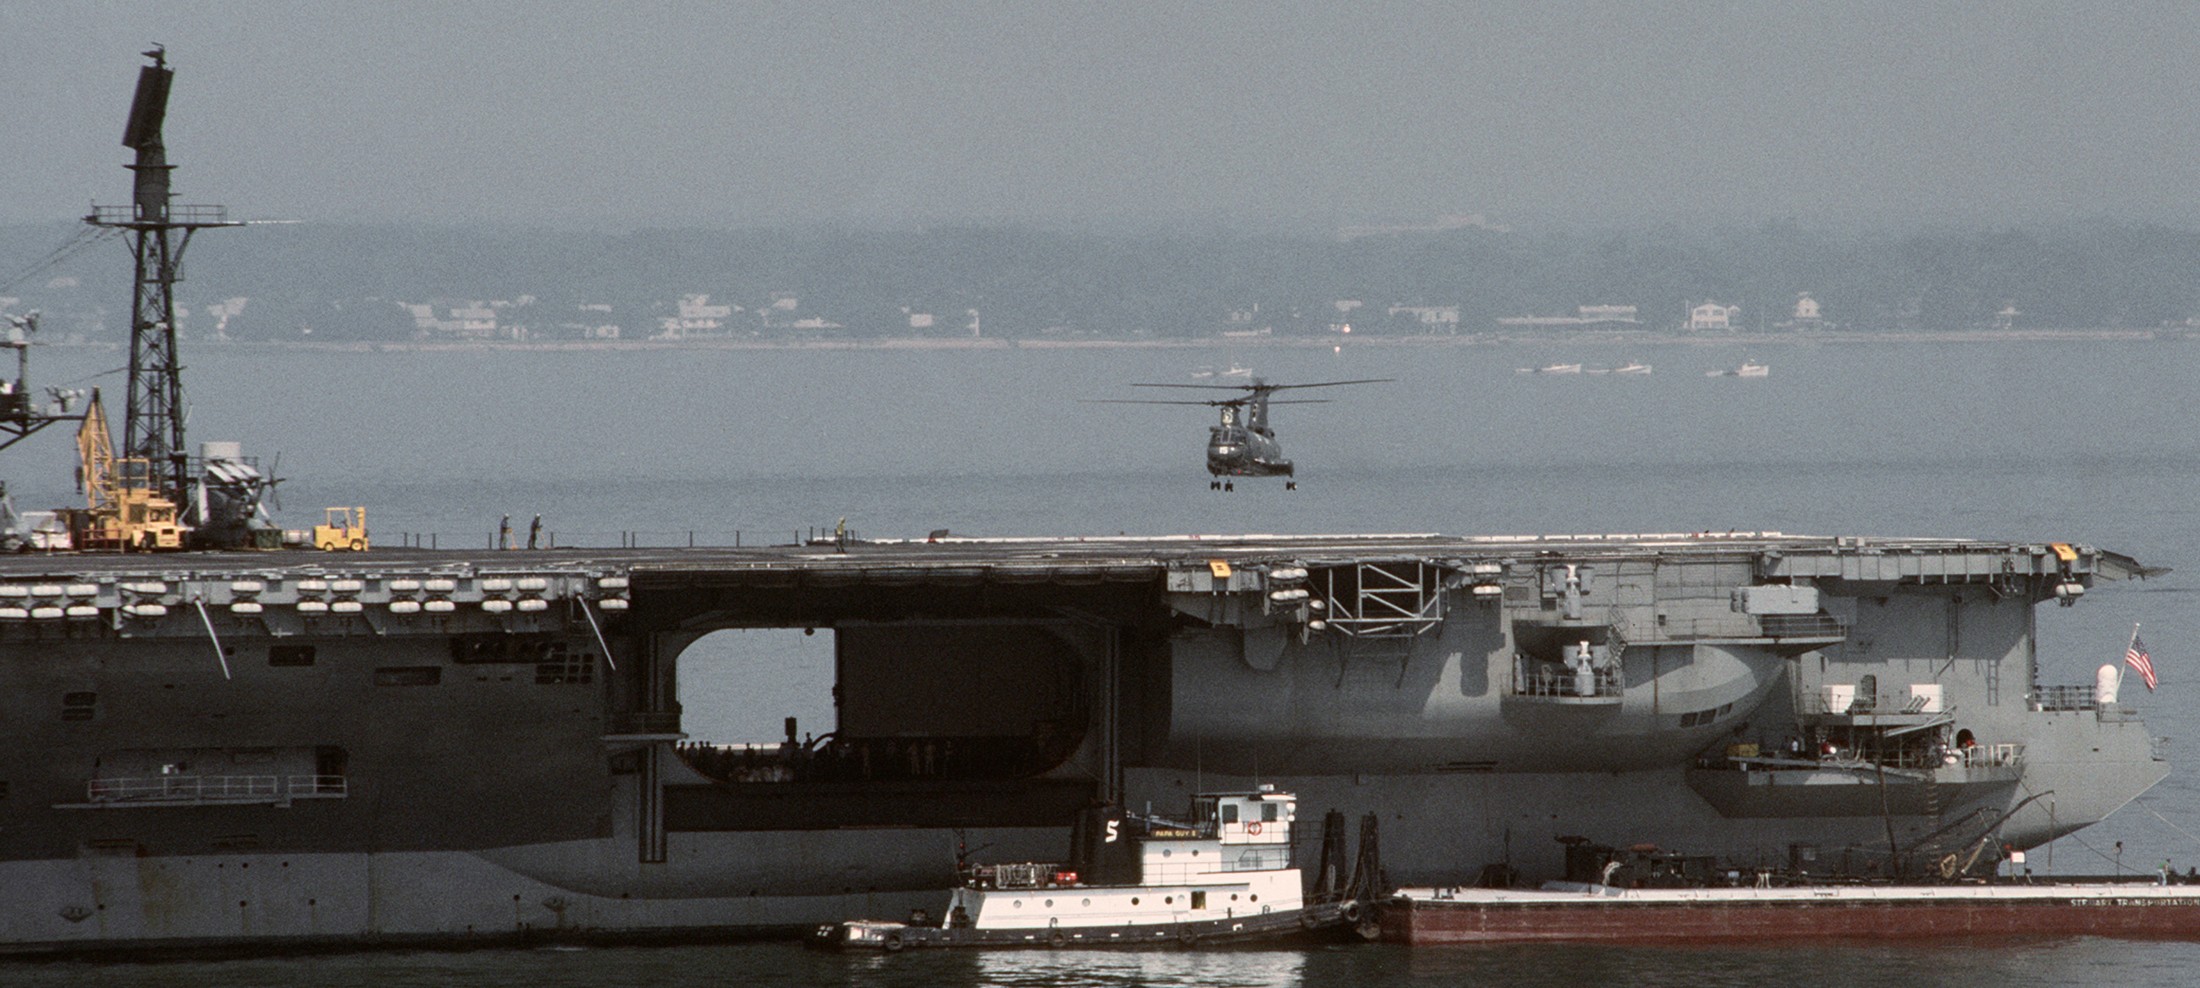 cv-66 uss america kitty hawk class aircraft carrier us navy 93